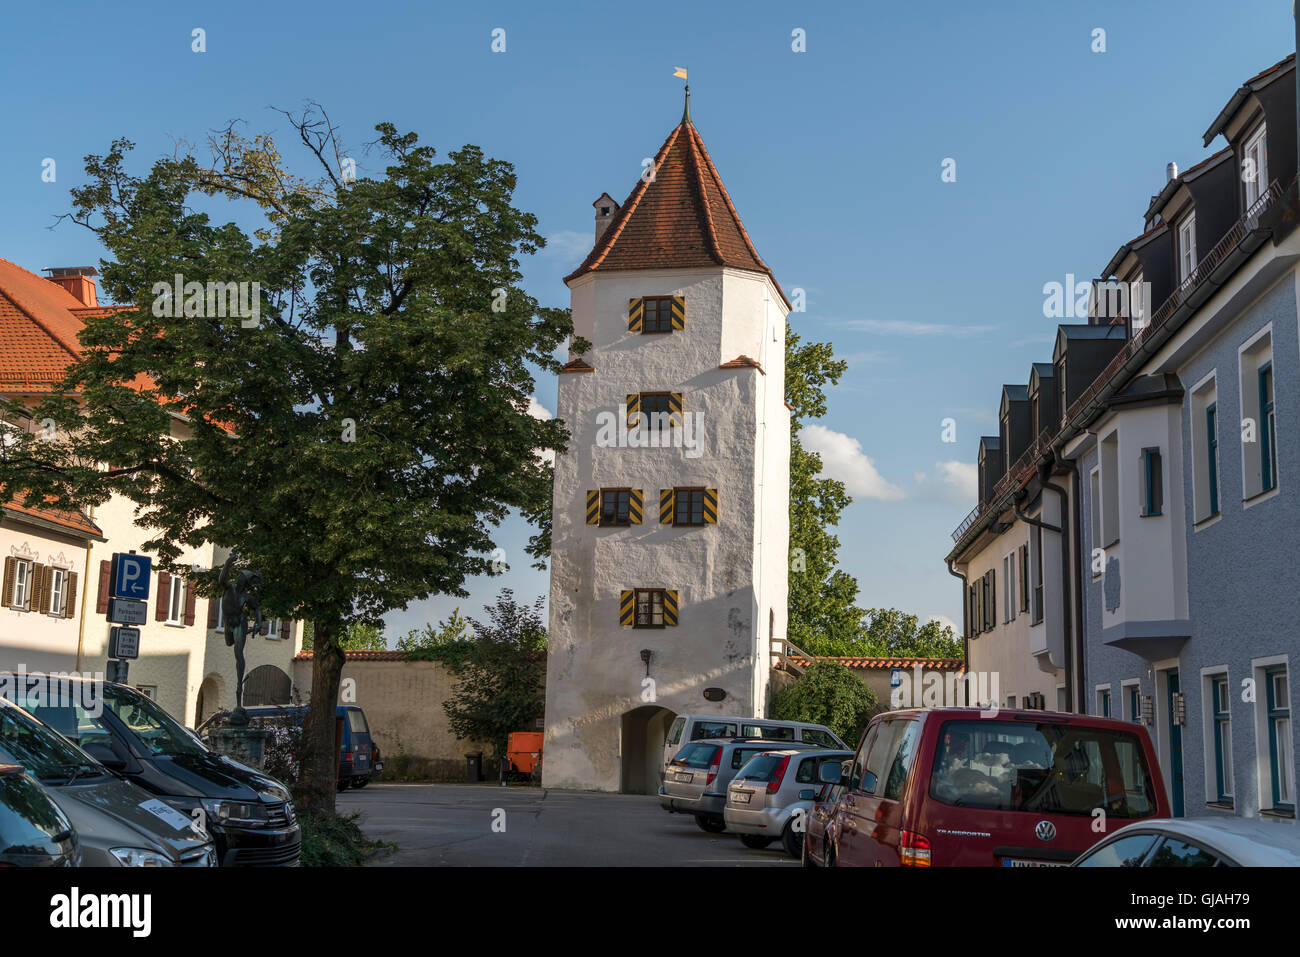 Polizei-Wachturm, Torturm in der historischen alten Stadt Schongau, Oberbayern, Bayern, Deutschland, Europa Stockfoto